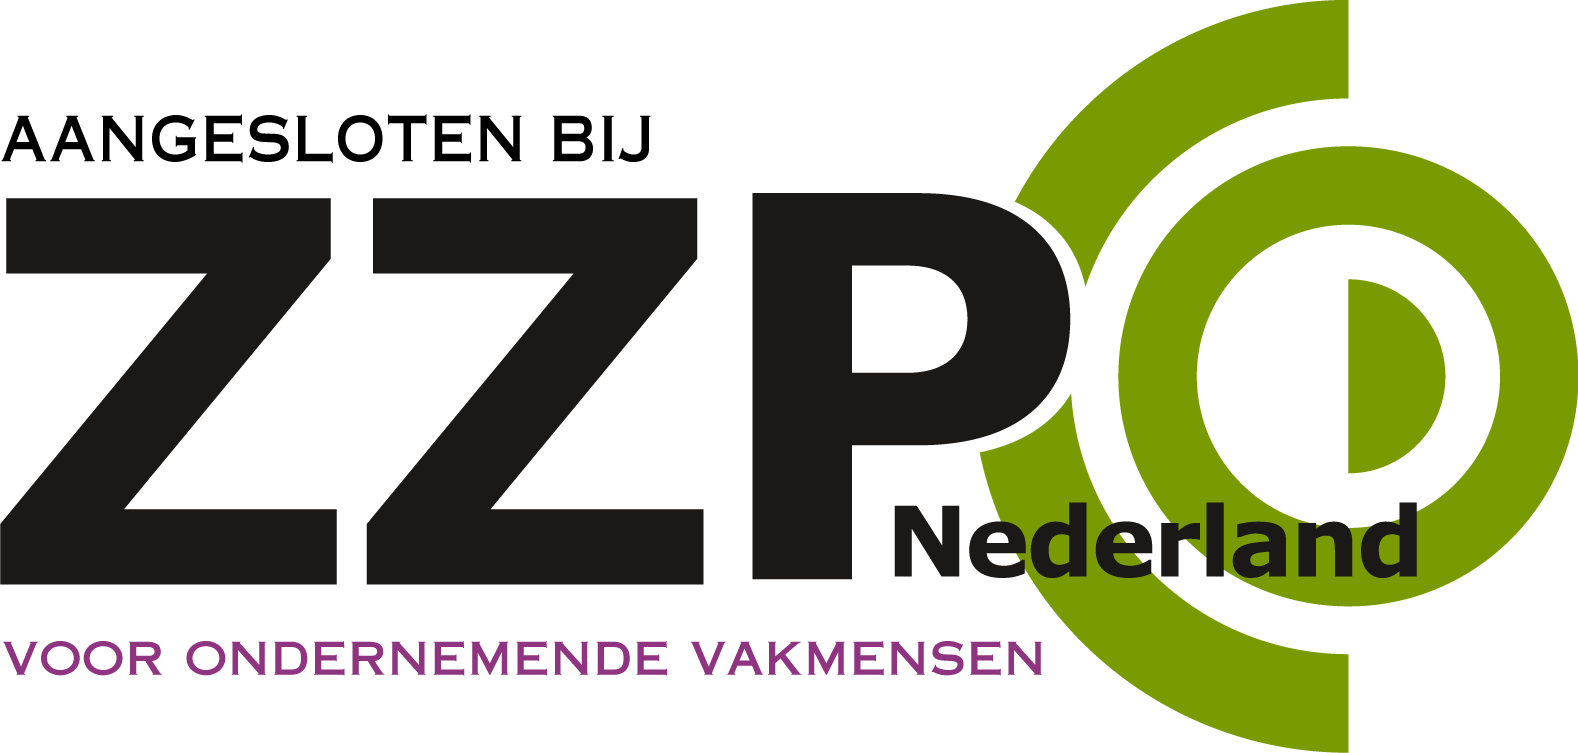 ZZP Nederland.